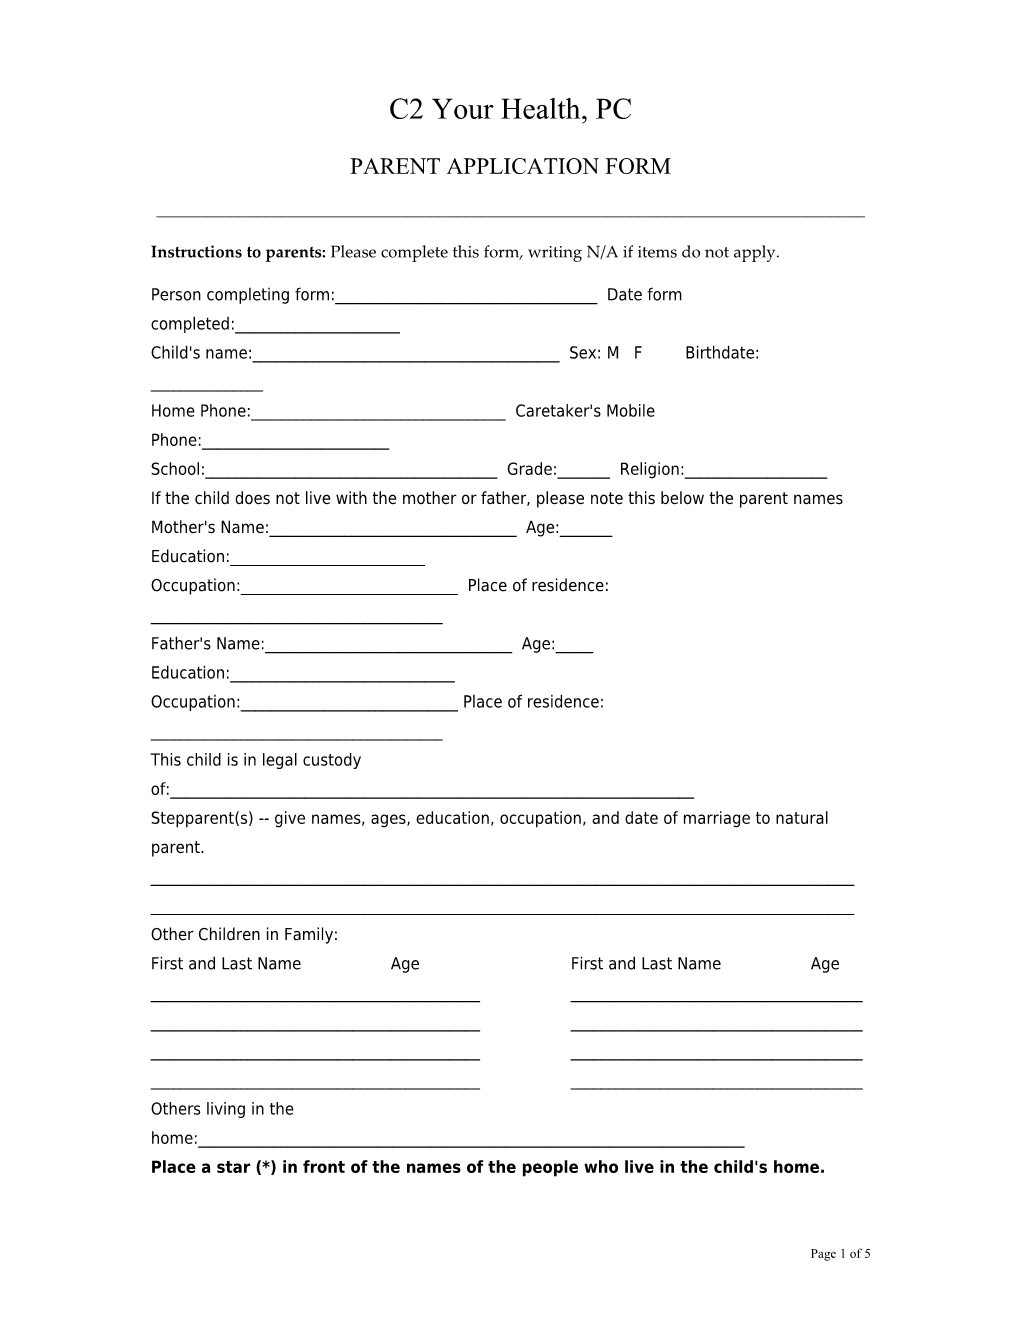 Parent Application Form